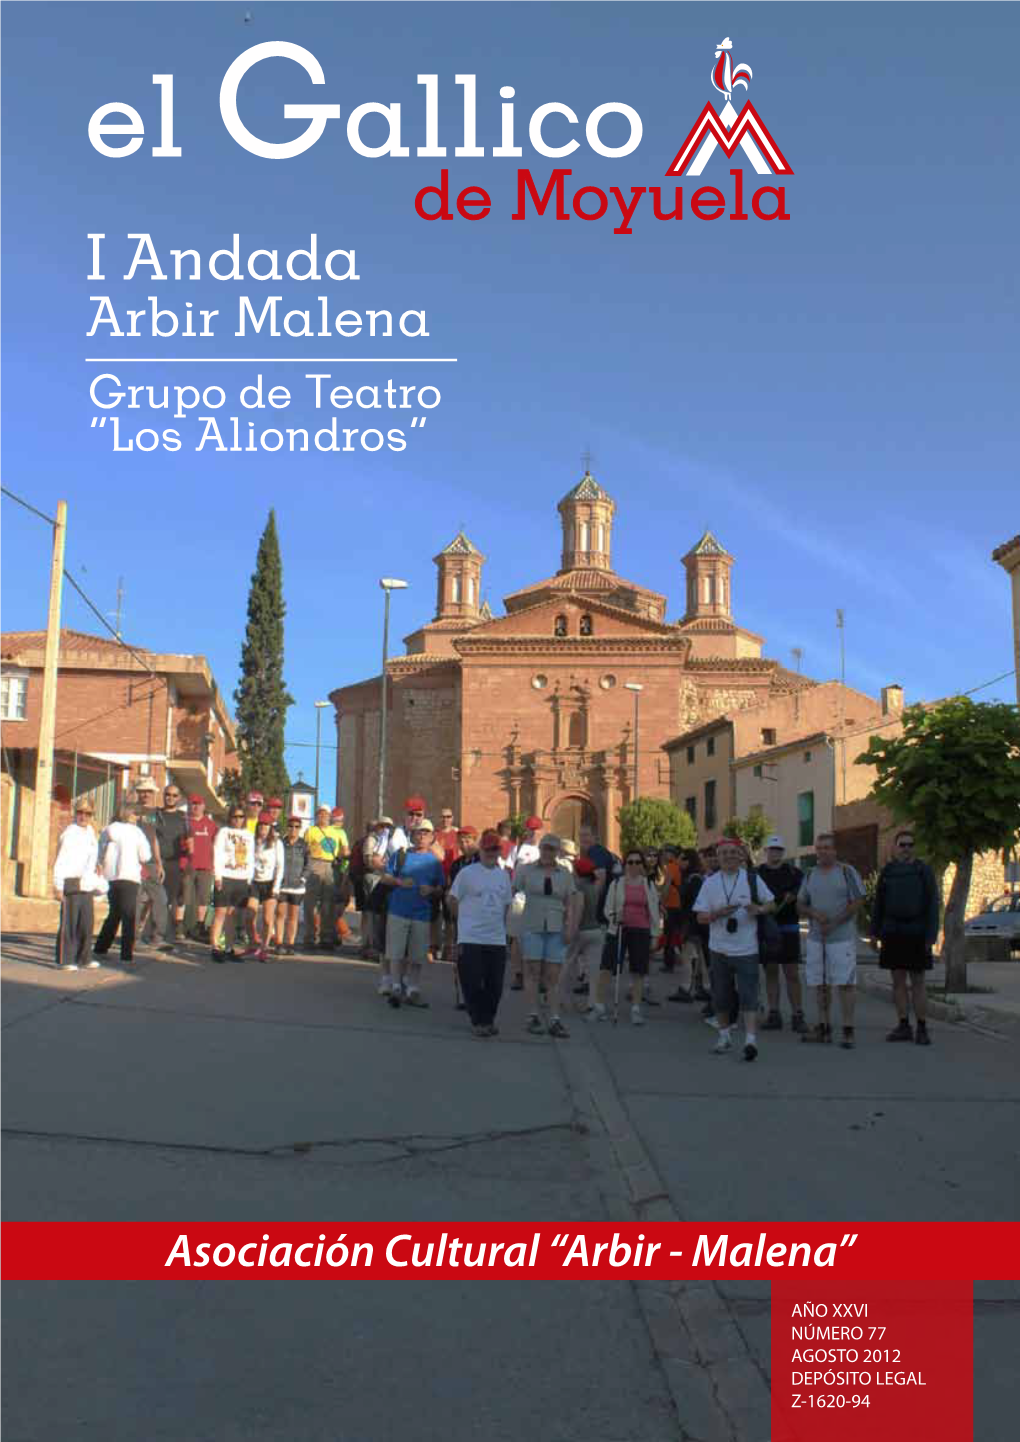 I Andada Arbir Malena Grupo De Teatro “Los Aliondros”